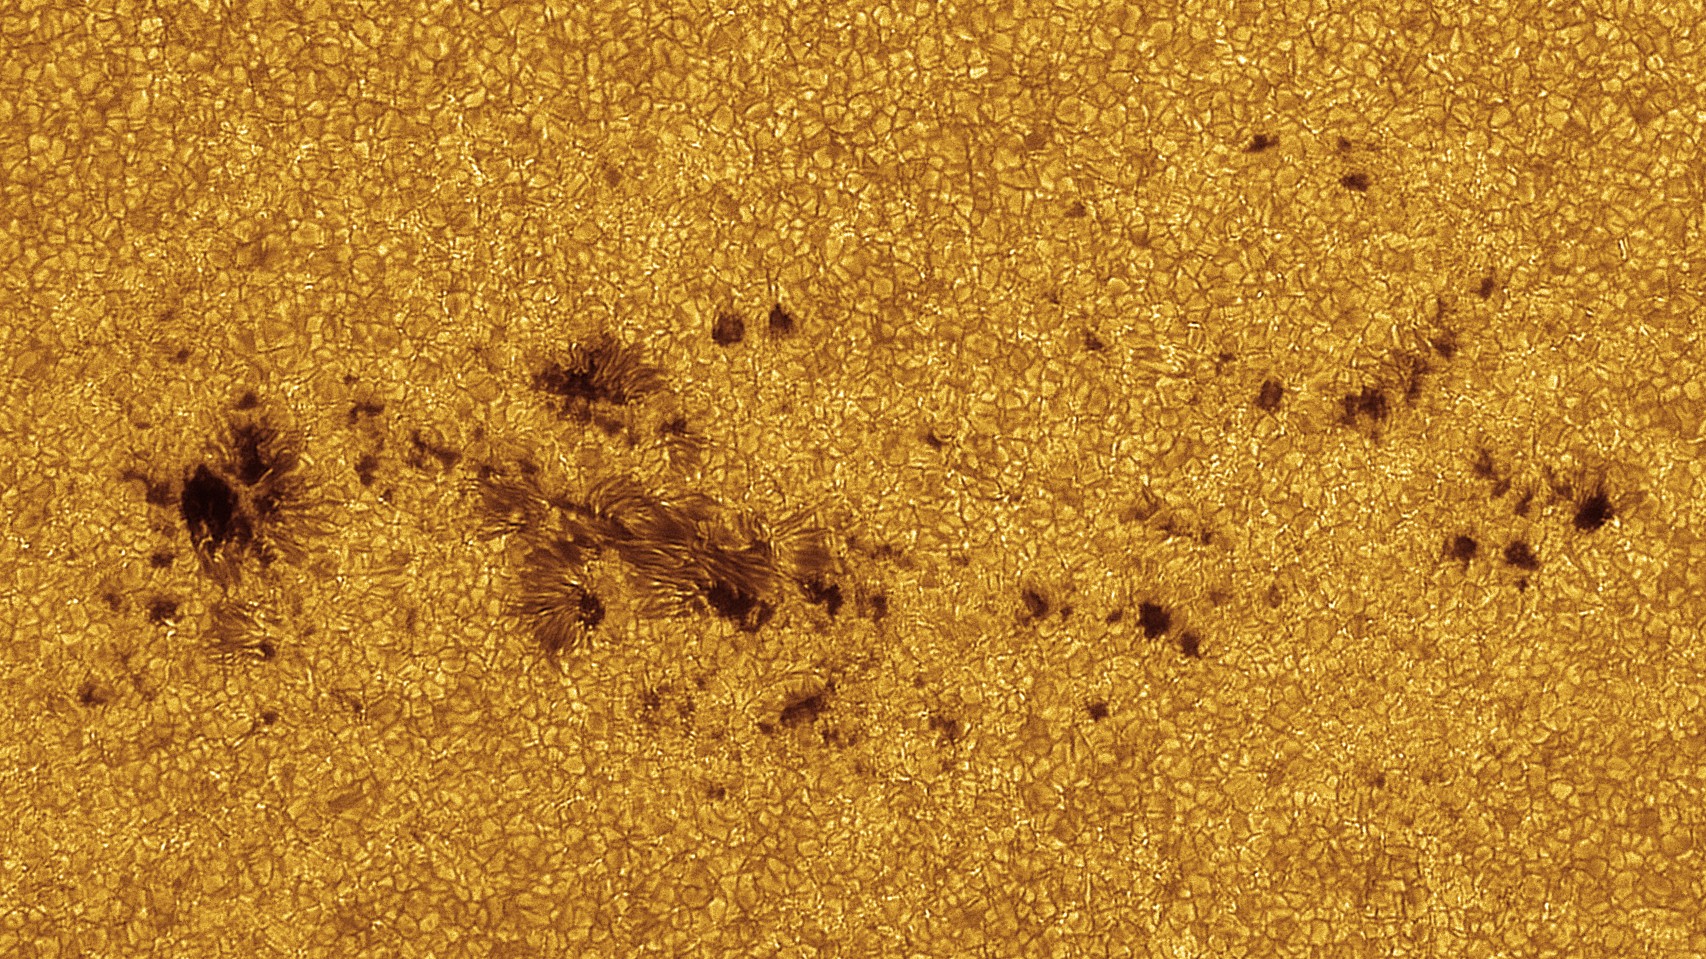 Taches, granulation, "bright spots" et "filigrees" dans la photosphère solaire en haute résolution, par David "Shaihulud" Dominé